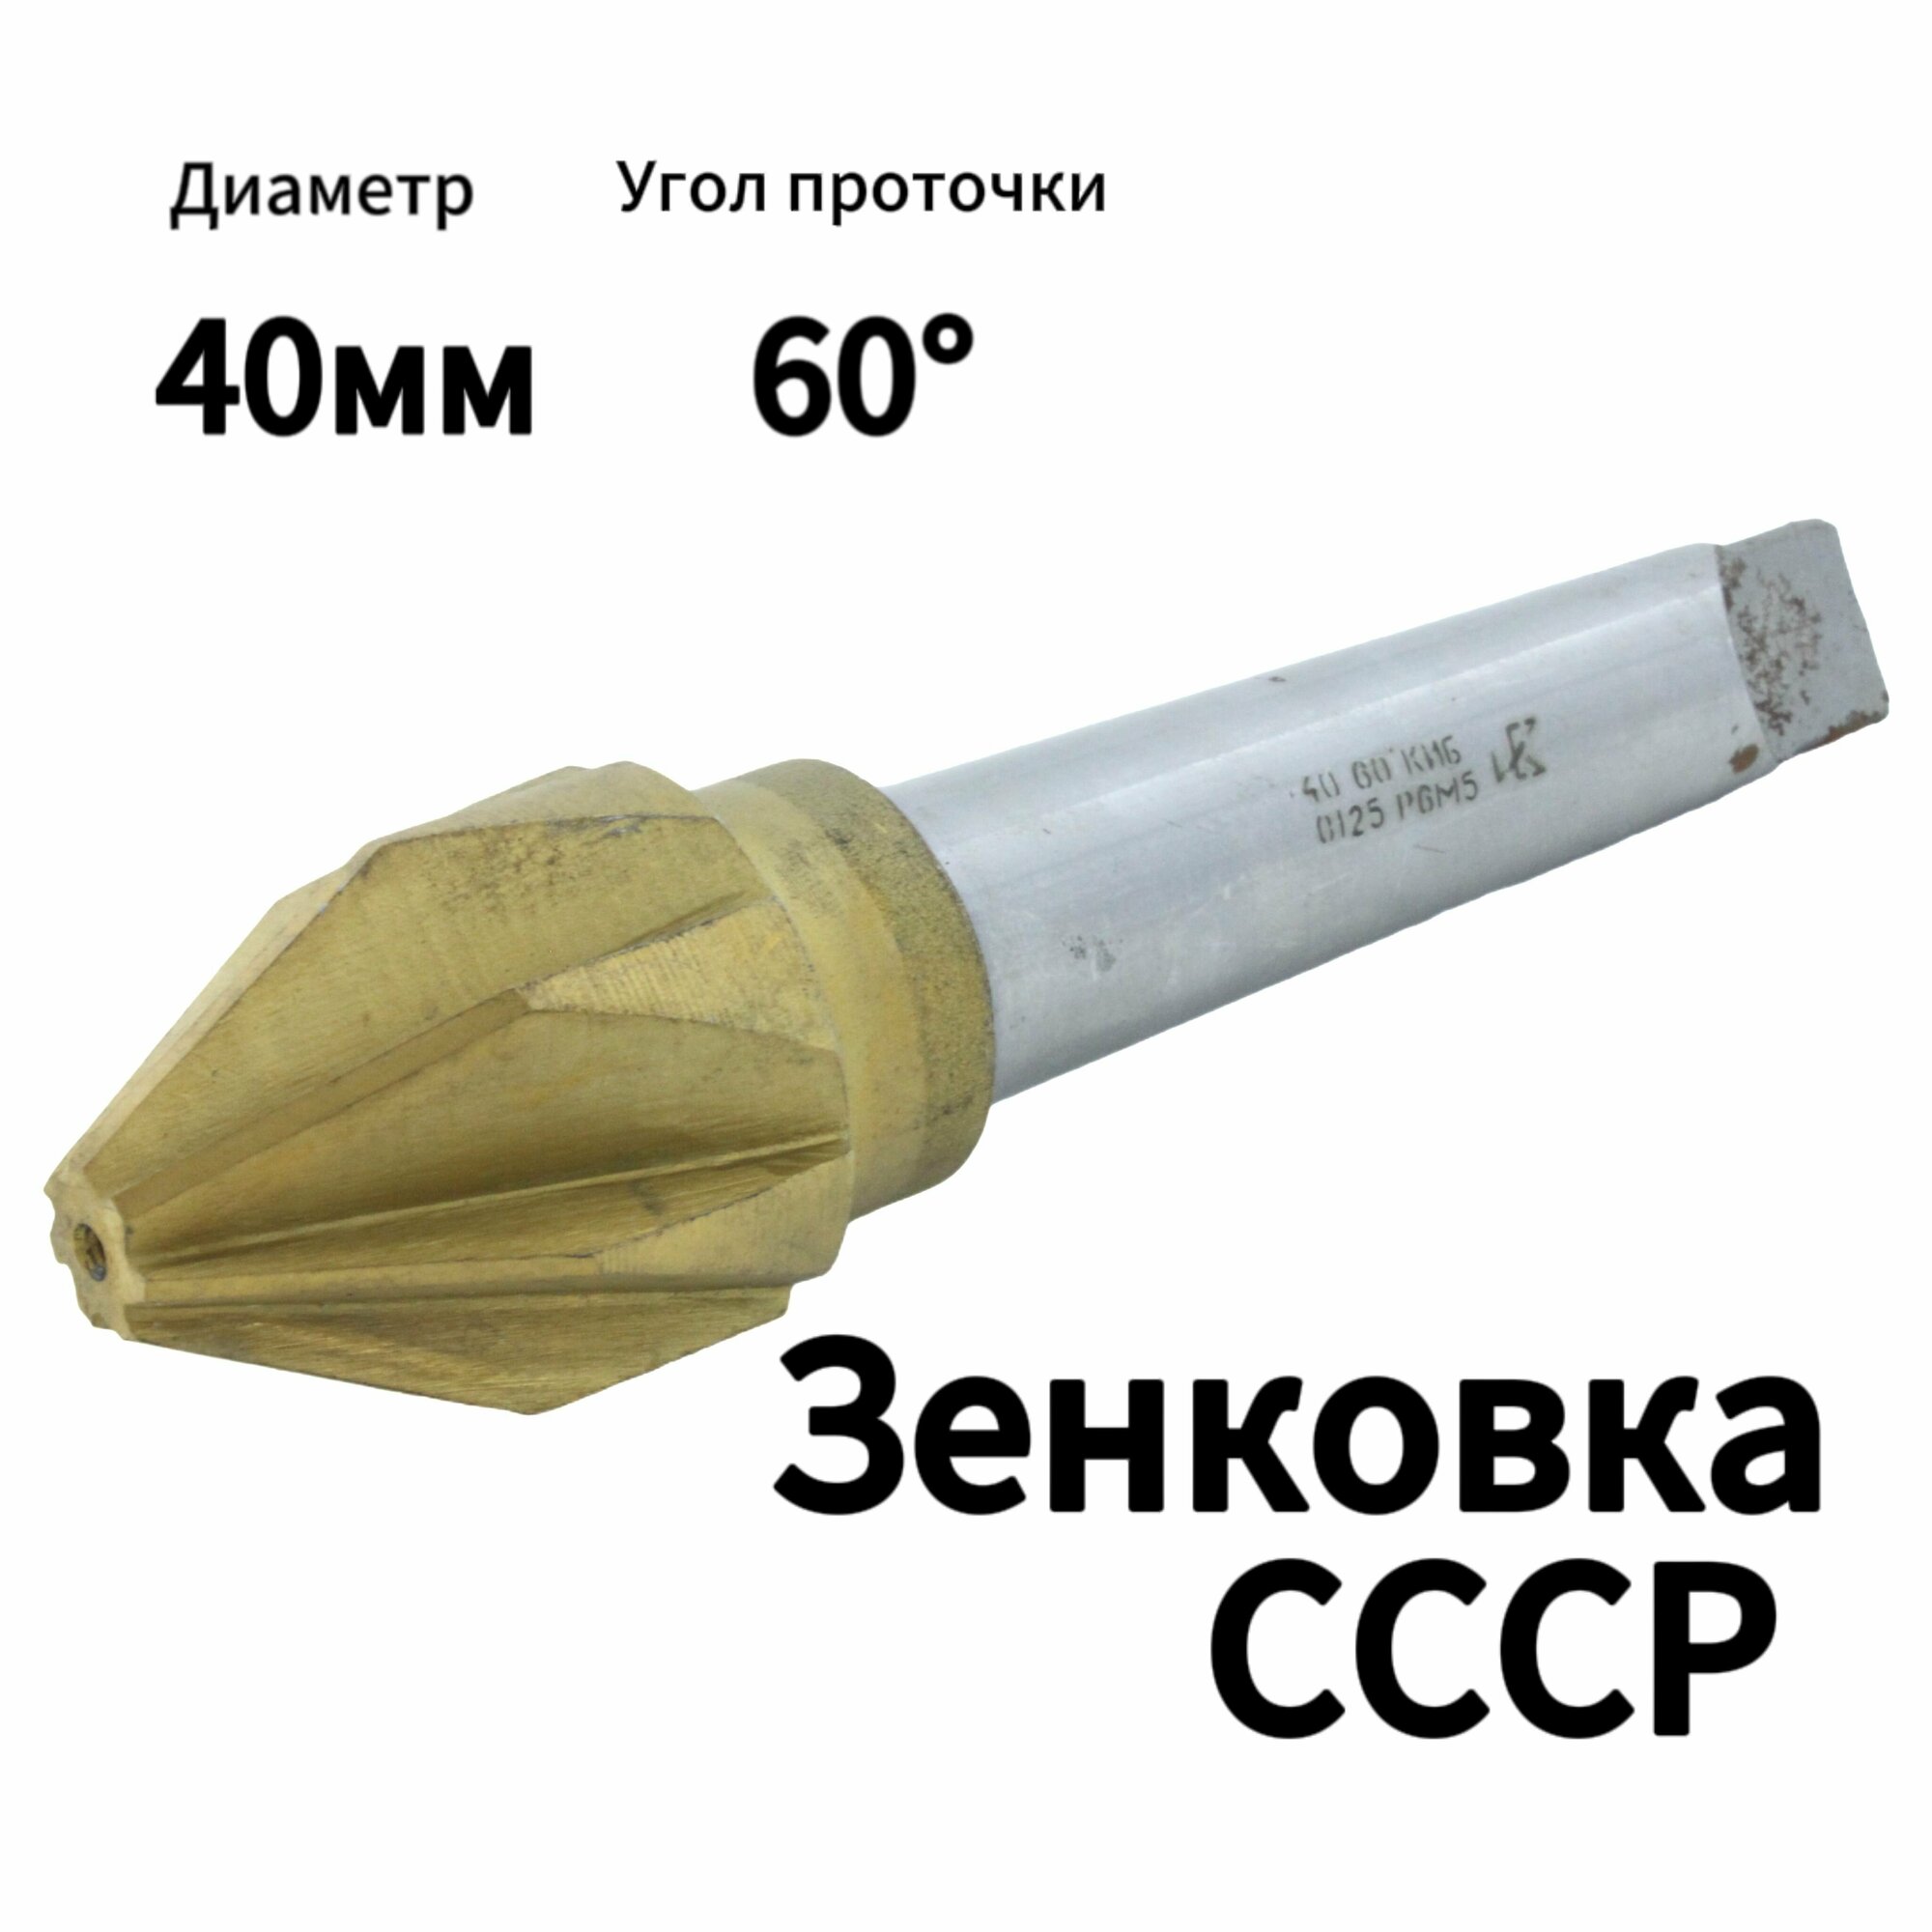 Зенковка D 40 мм Конический хвостовик Угол проточки 60 градусов Р6М5 Производство СССР КМ 3